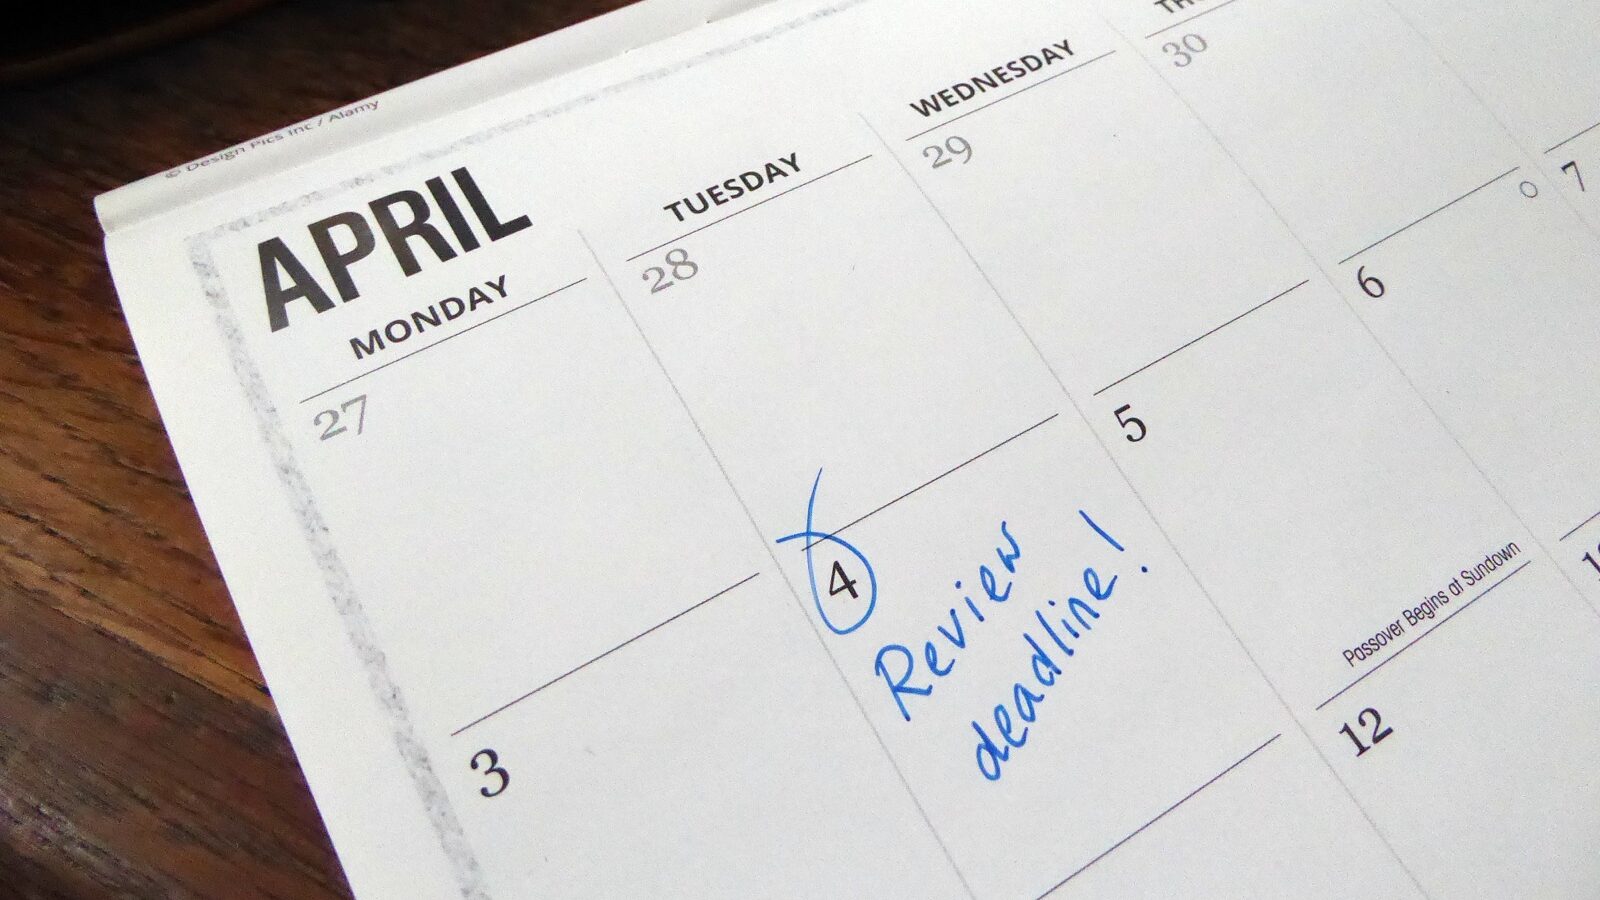 April calendar with deadline highlighted